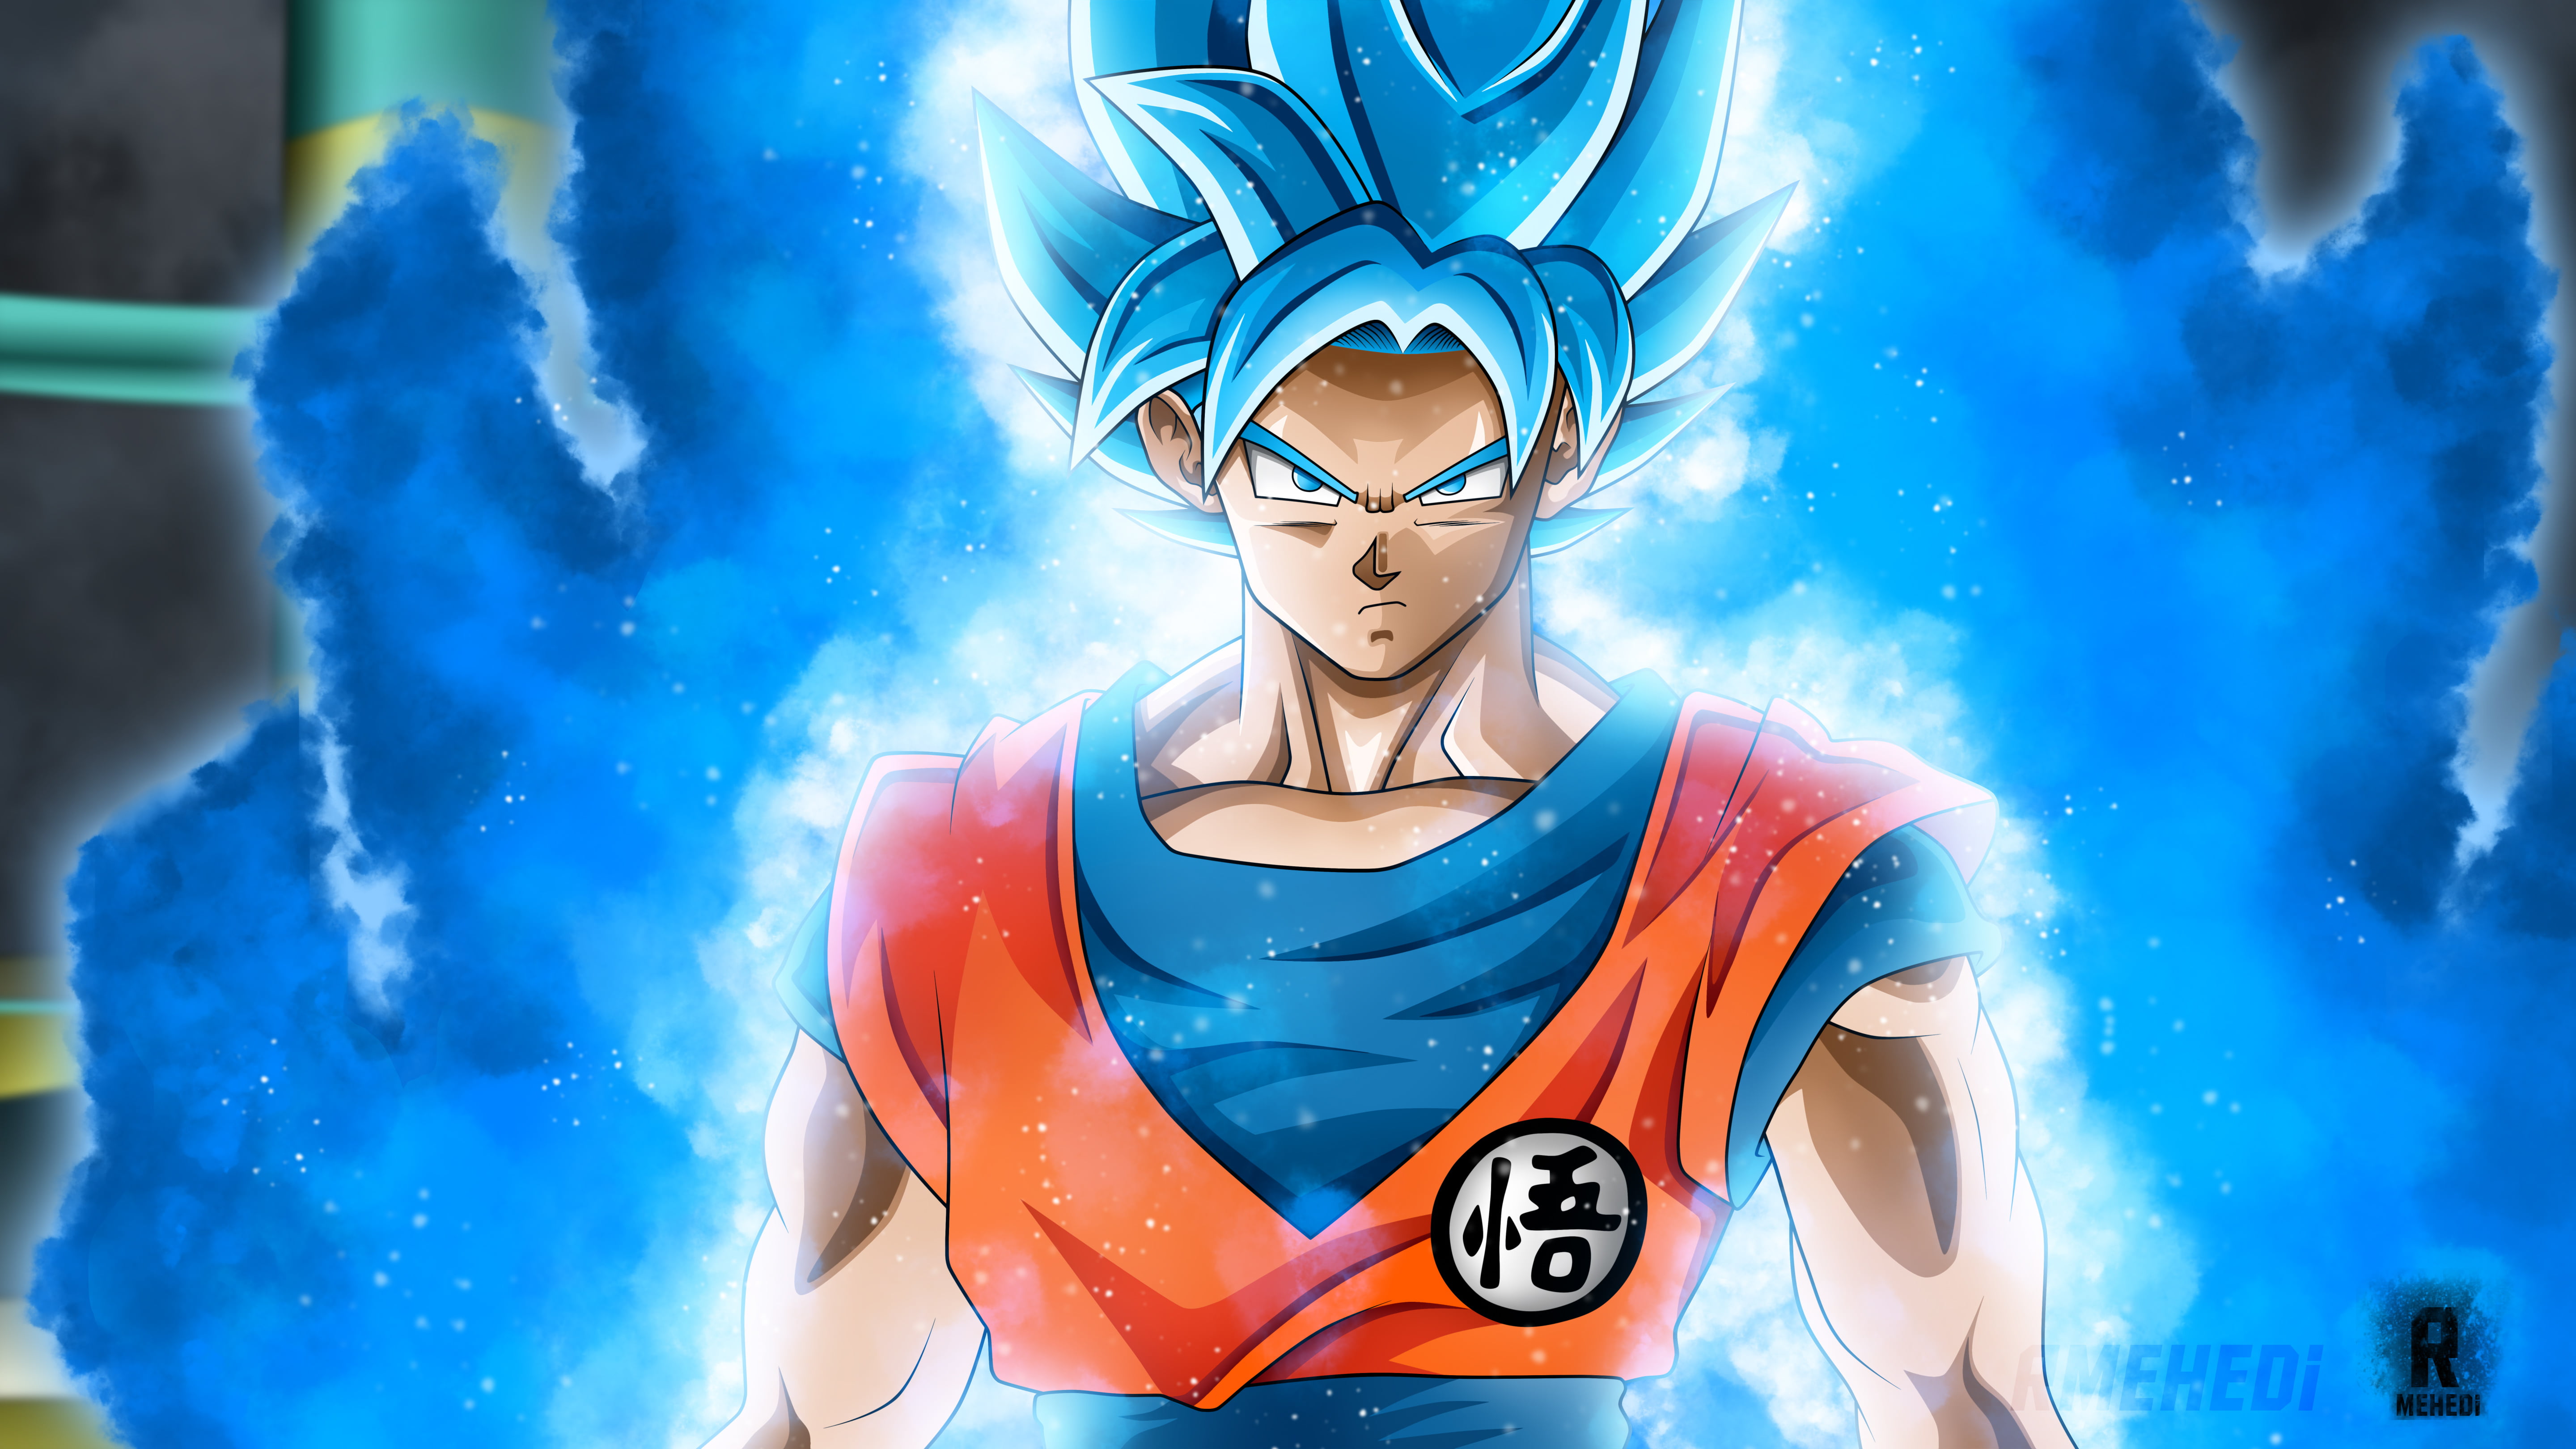 Super Saiyan God Goku illustration